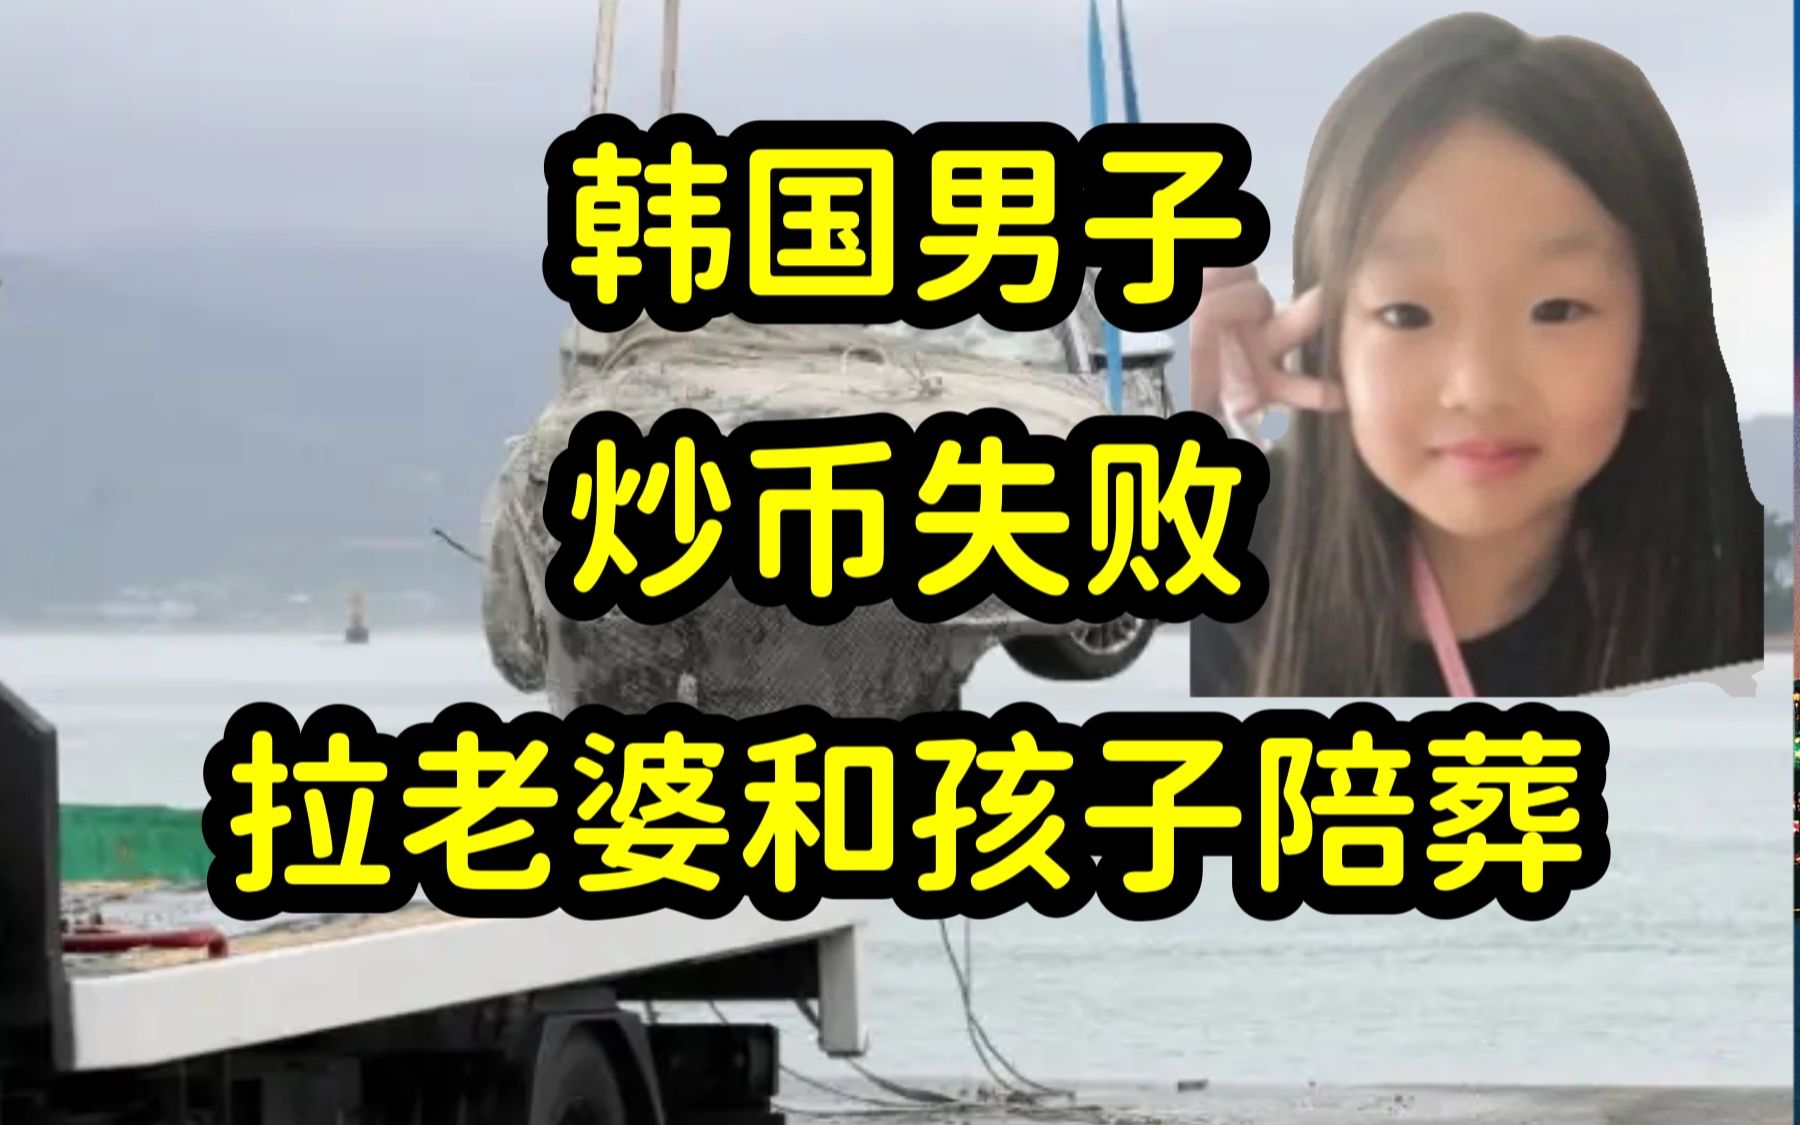 加密货币Luna币崩盘，韩国男子带全家三口自杀，女儿赵友娜仅10岁，远离虚拟货币骗局